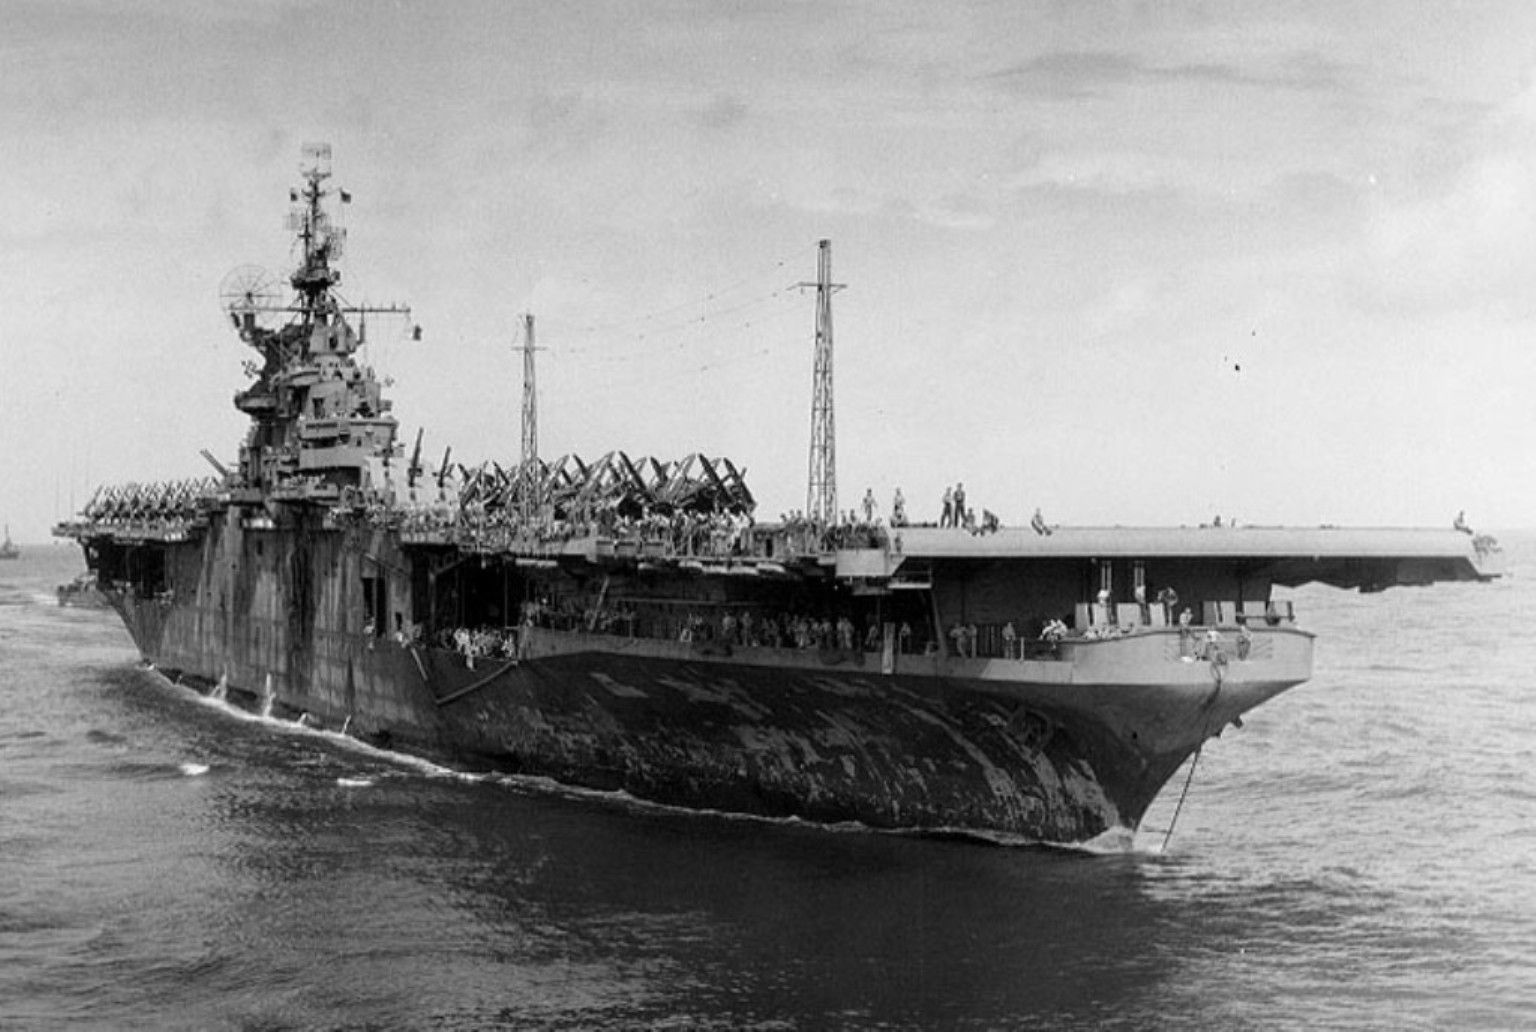 USS Shangri-La (CV-38) in World War II and Vietnam